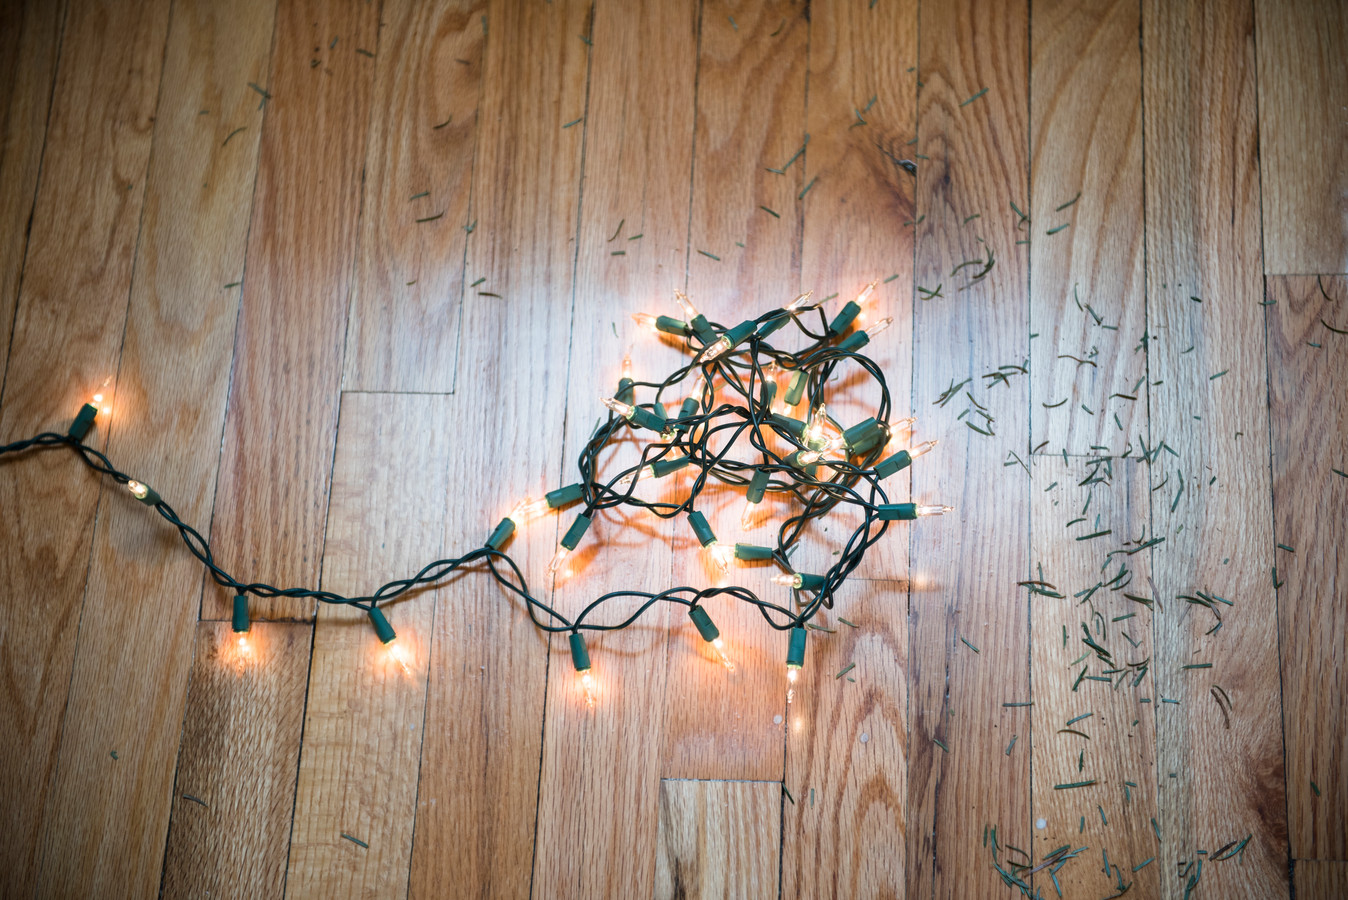 Het snoer van kerstlampjes in de knoop en naalden door je hele huis - hoe voorkom je deze kerstergernissen?